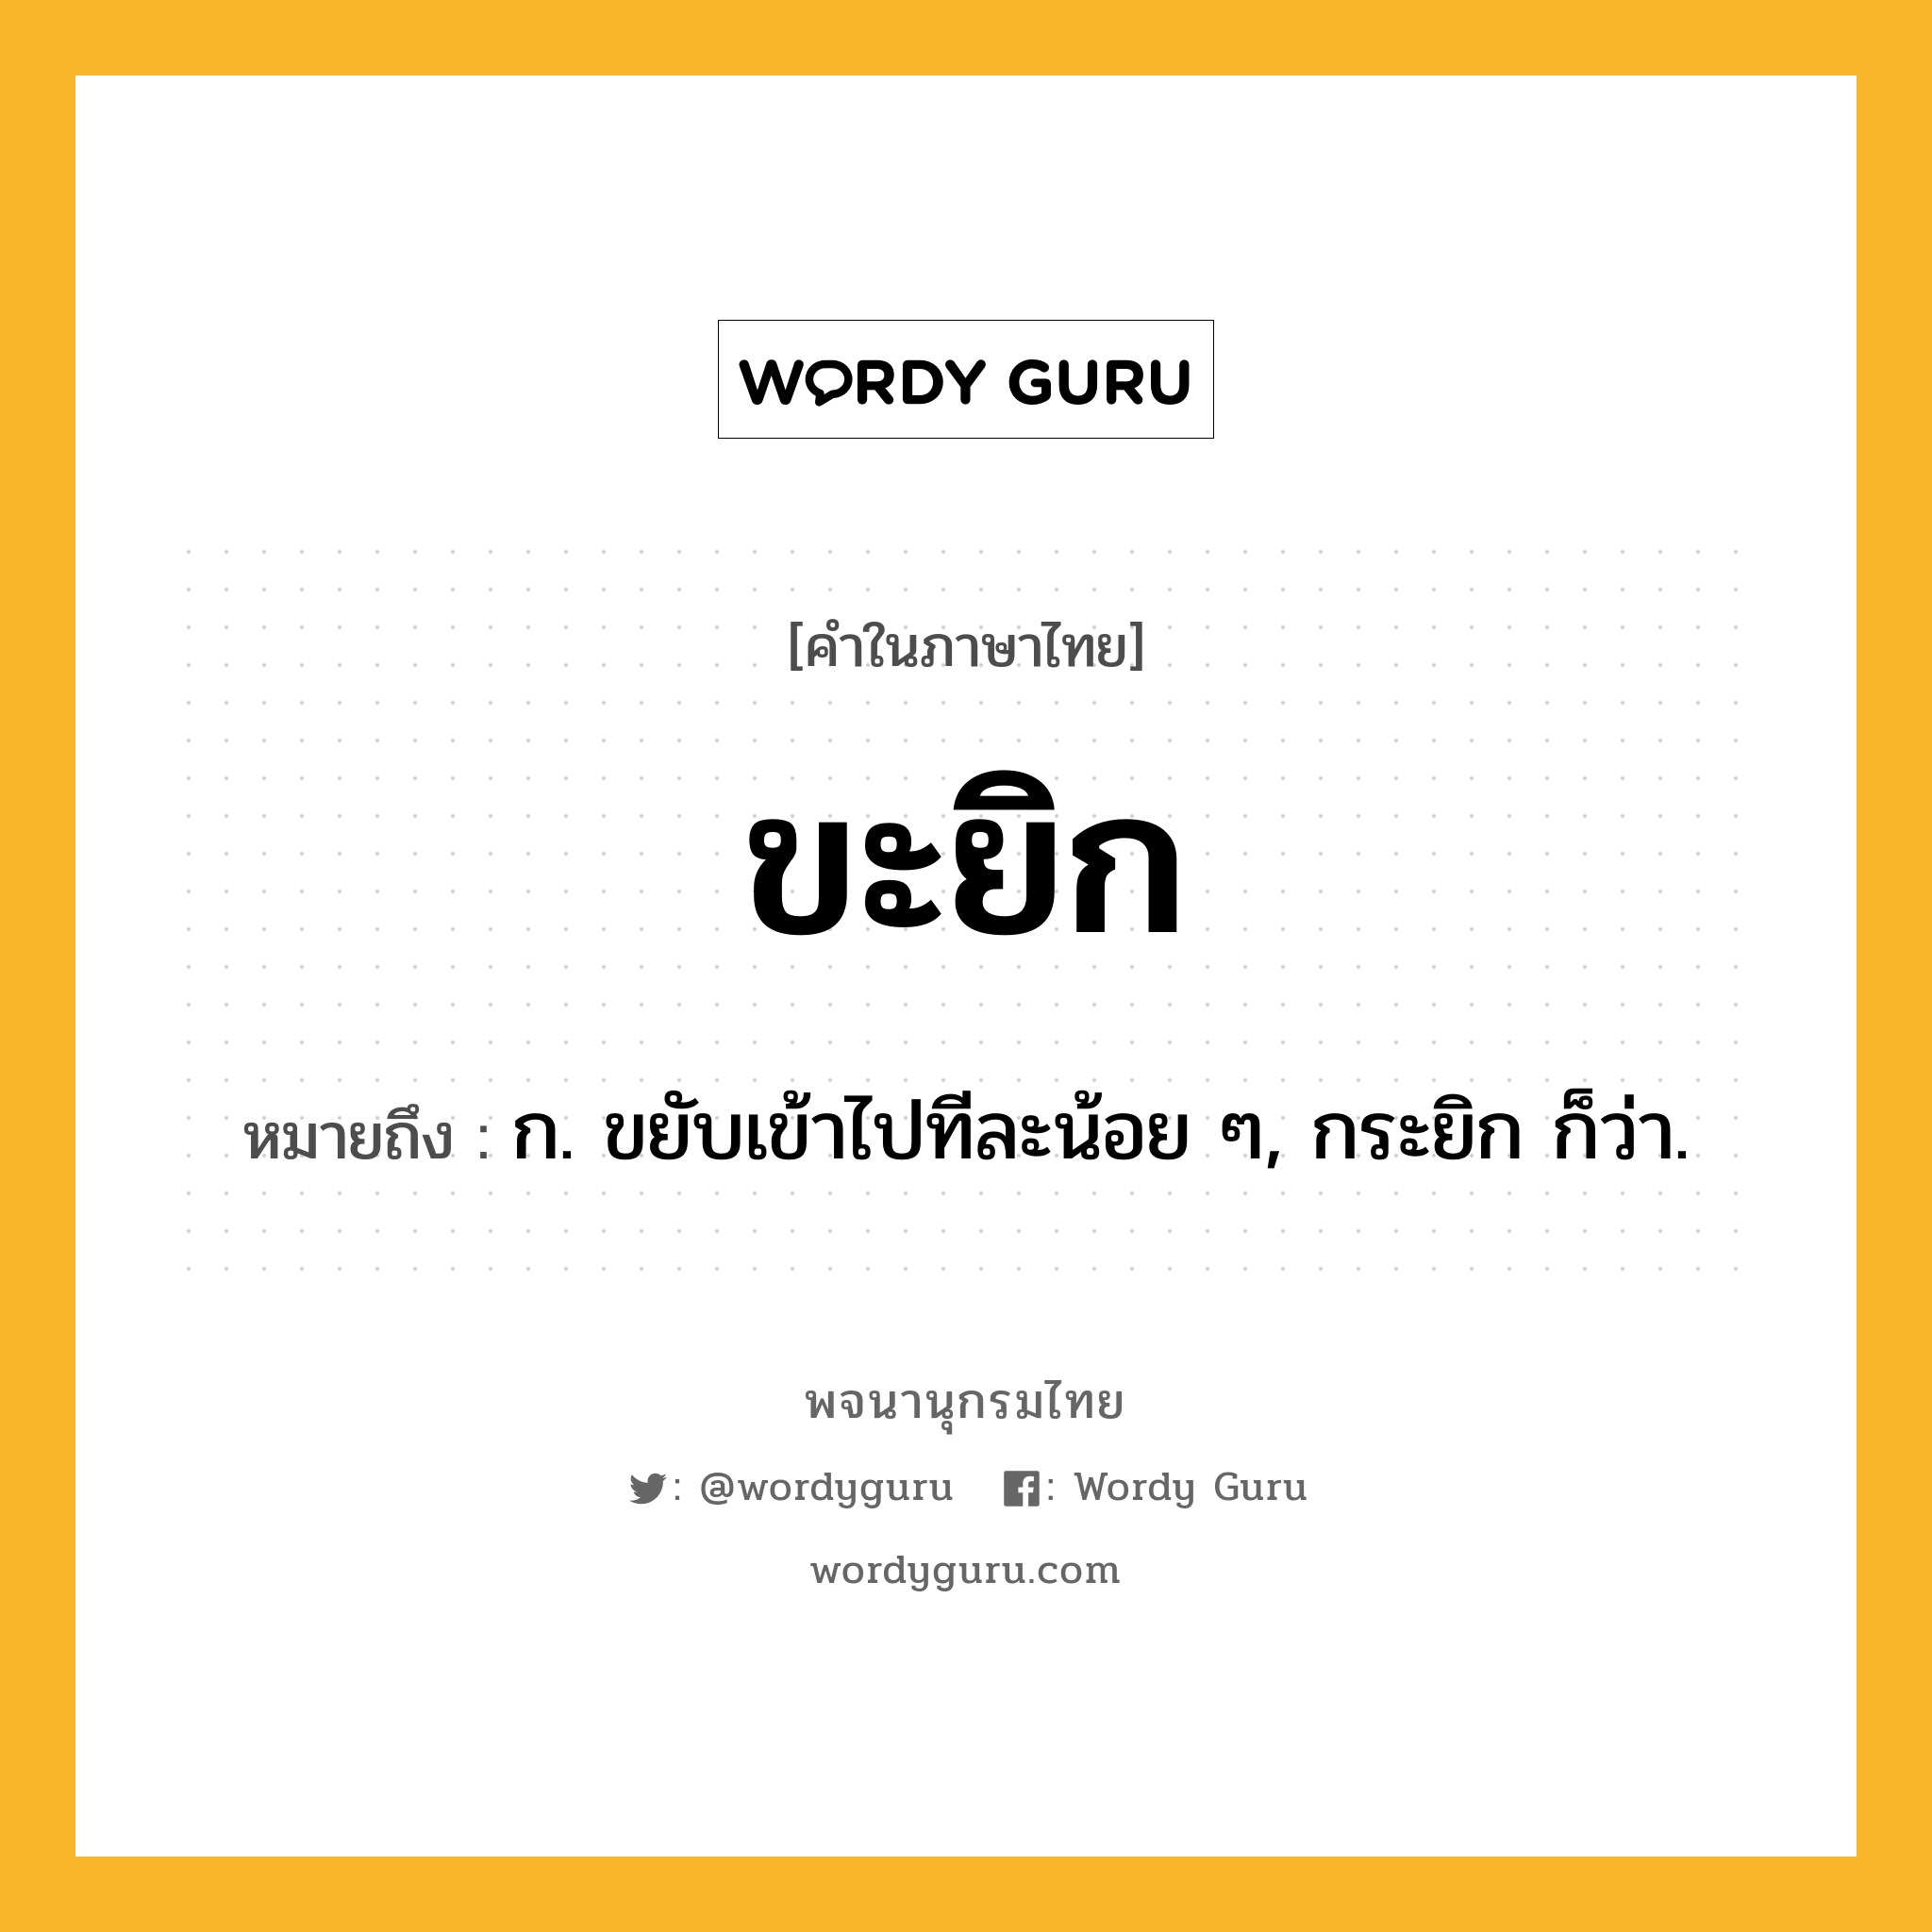 ขะยิก หมายถึงอะไร?, คำในภาษาไทย ขะยิก หมายถึง ก. ขยับเข้าไปทีละน้อย ๆ, กระยิก ก็ว่า.